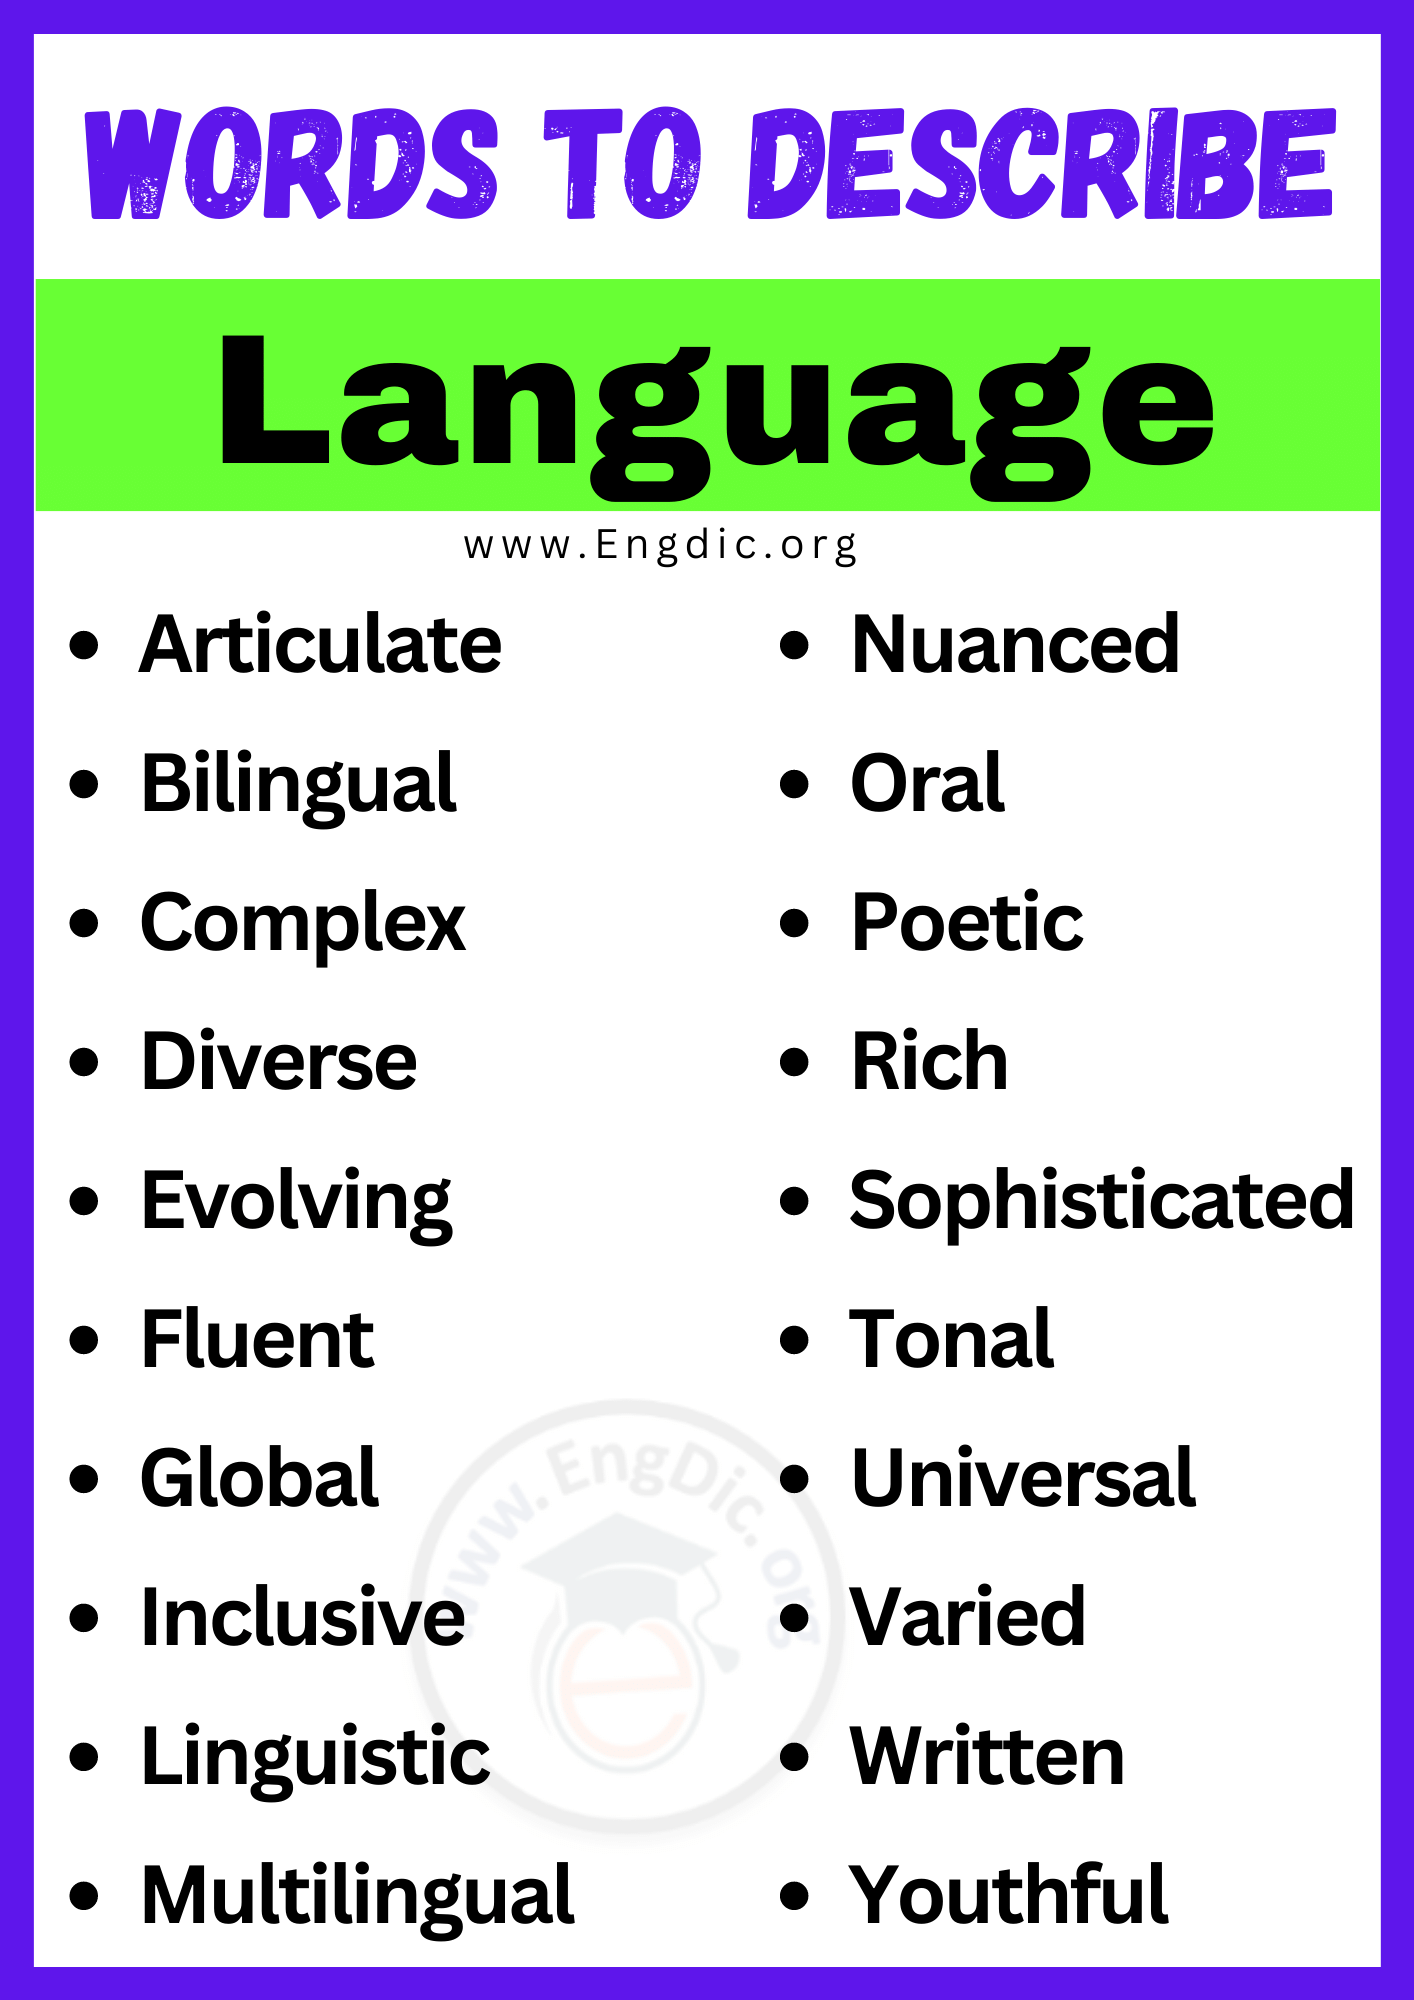 Words to Describe Language